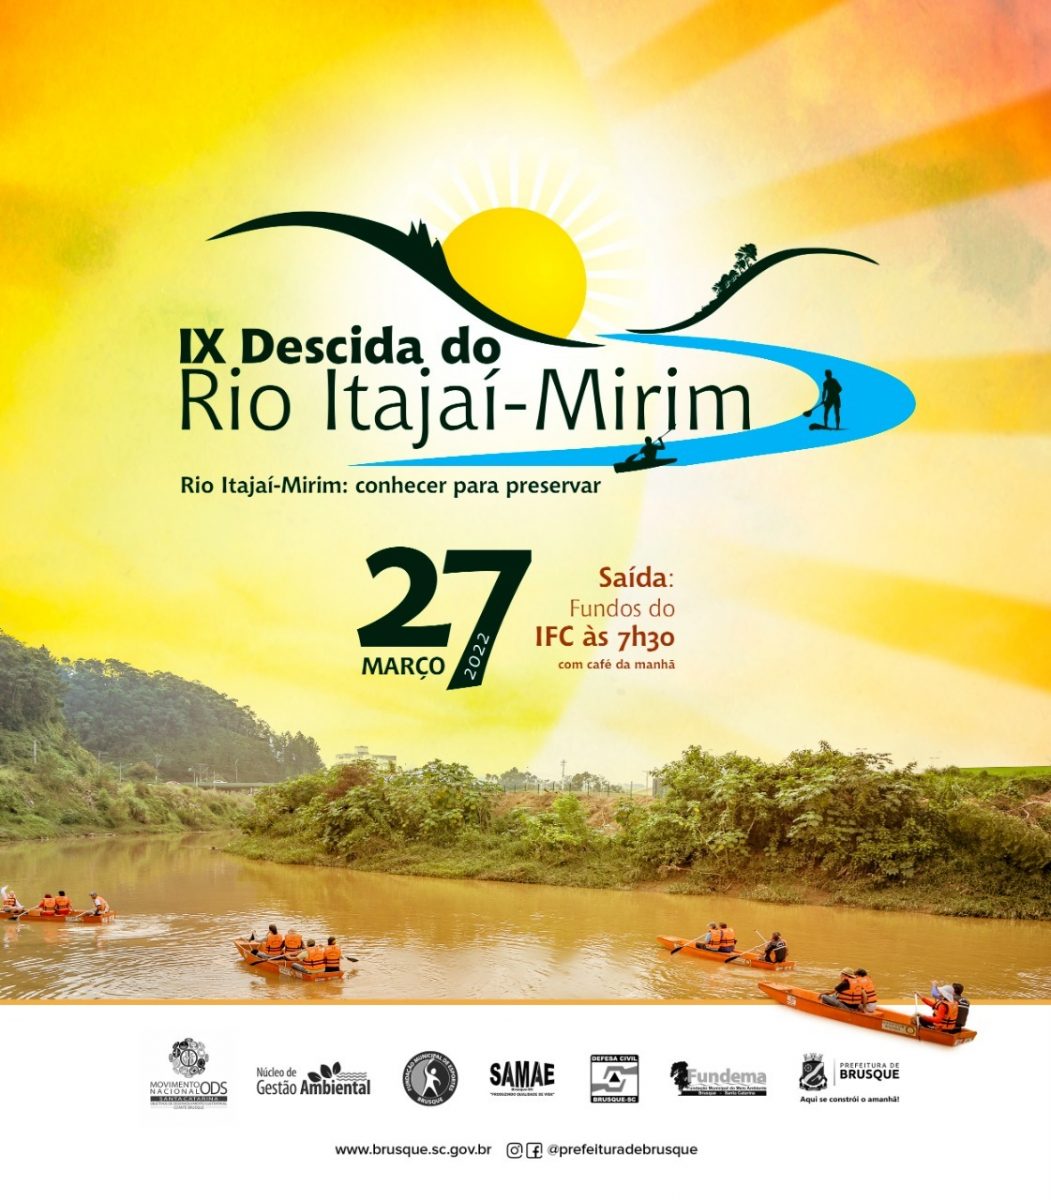 Fundema celebra o Dia Mundial da Água com a IX Descida do Rio Itajaí-Mirim